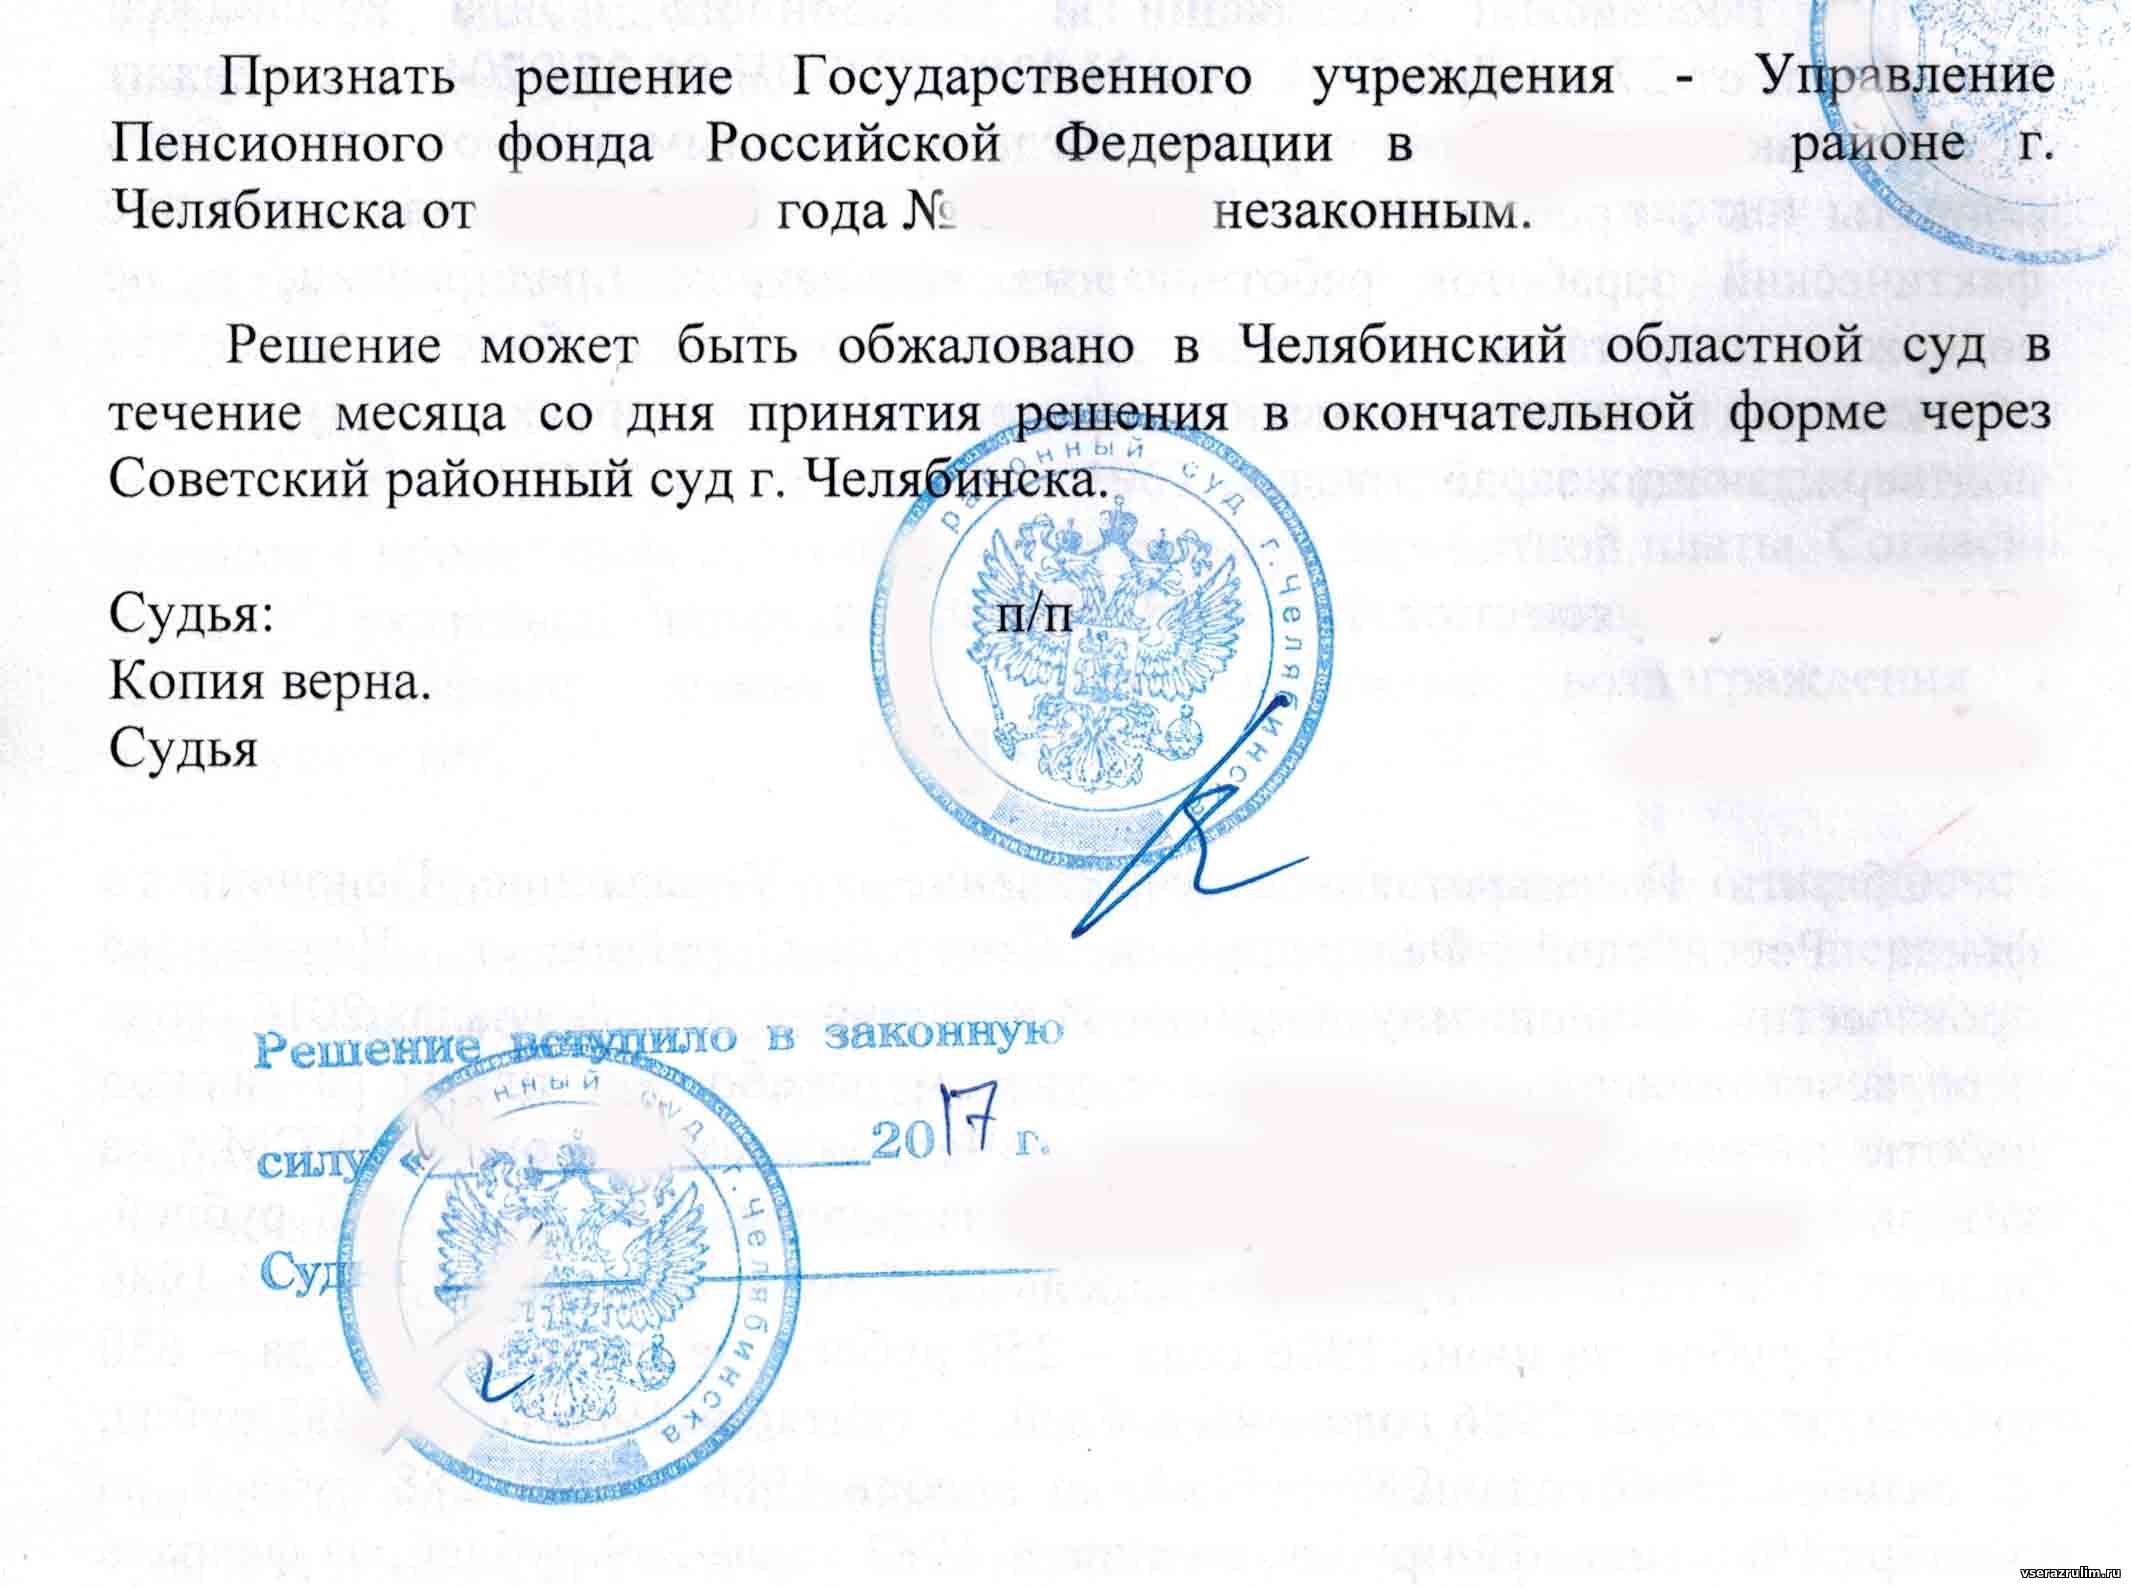 День принятия решения суда в окончательной форме. Арбитражный суд Новосибирской области копия верна.